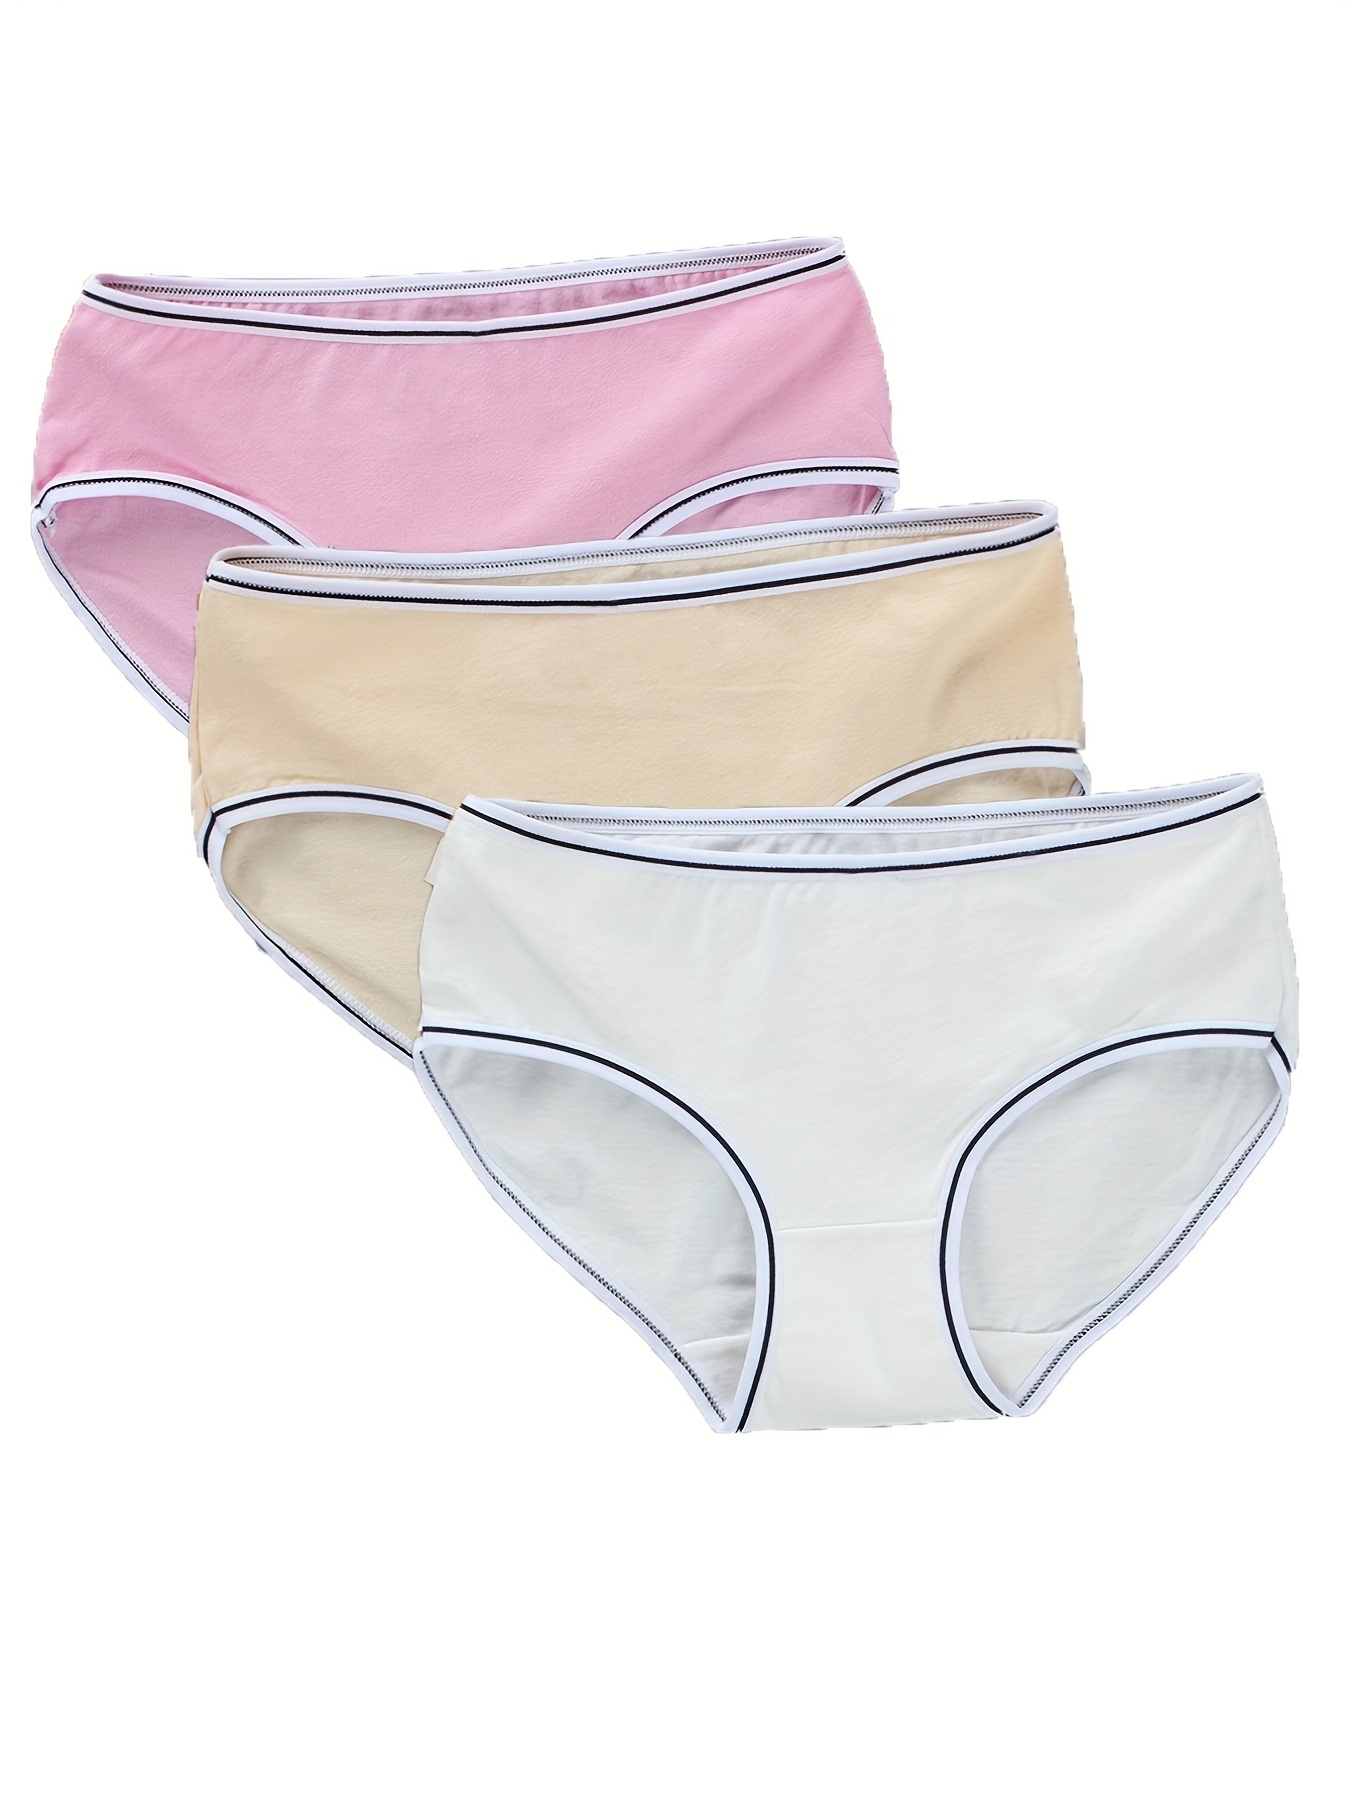 Mid Rise Cotton Underwear Girls Seamless Brief